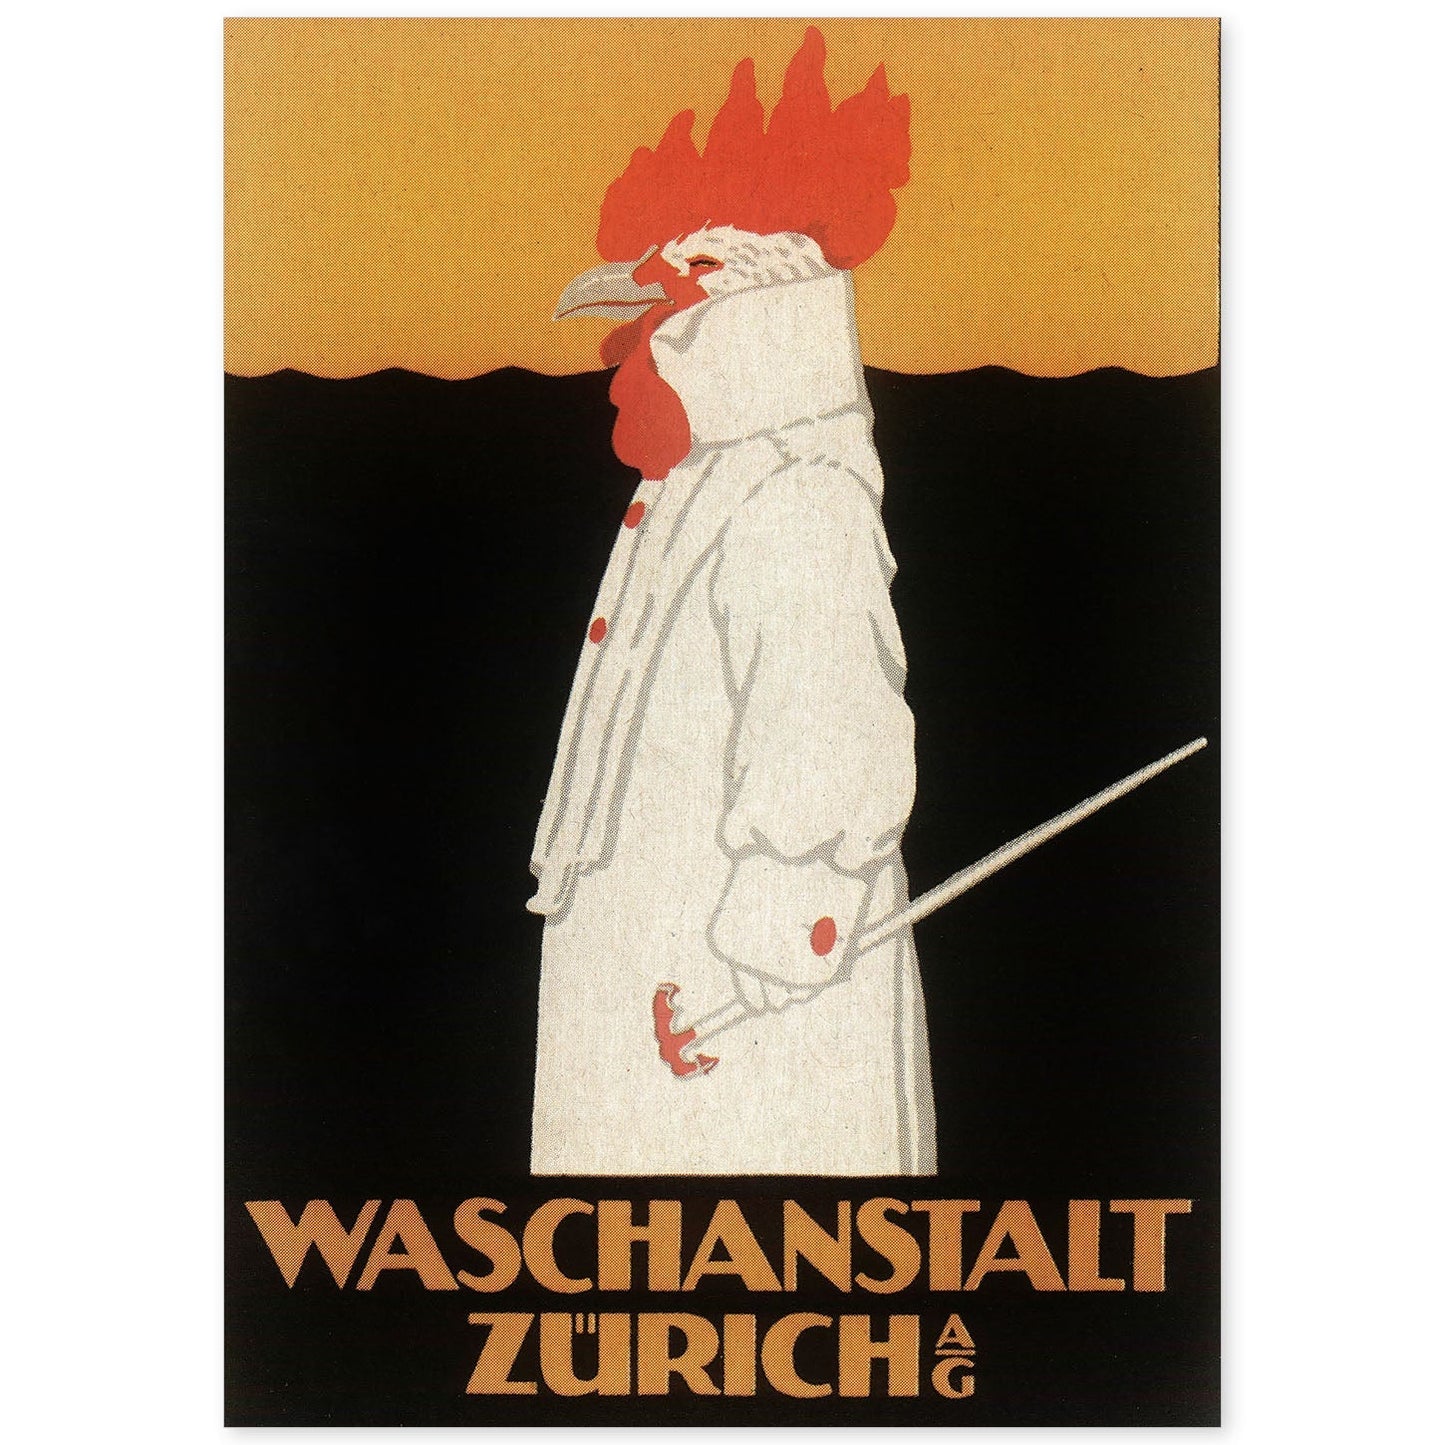 Poster vintage. Anuncio vintage Waschanstalt Zurich de 1905.-Artwork-Nacnic-A4-Sin marco-Nacnic Estudio SL